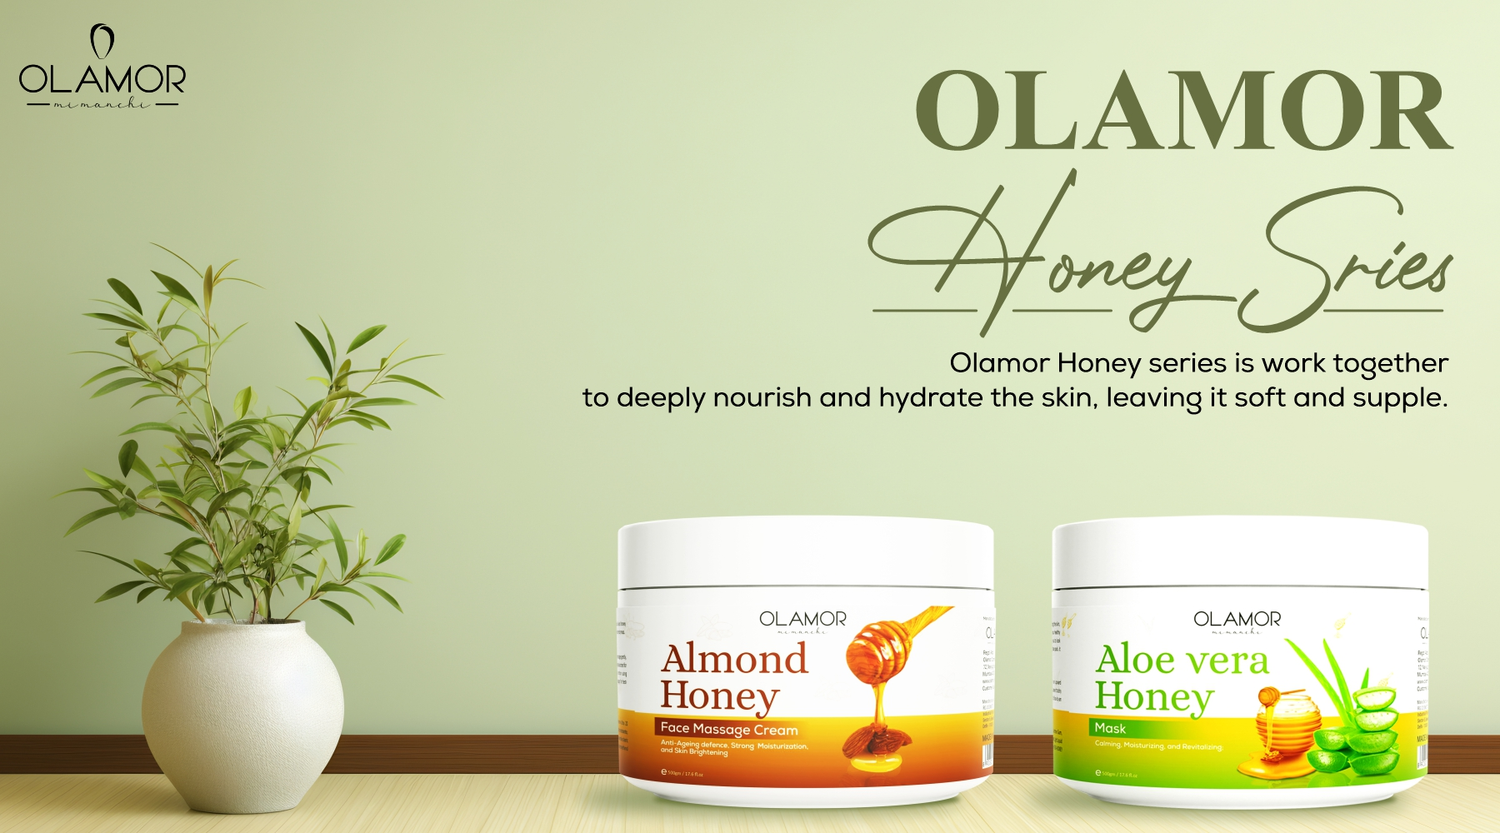 OLAMOR Honey Series